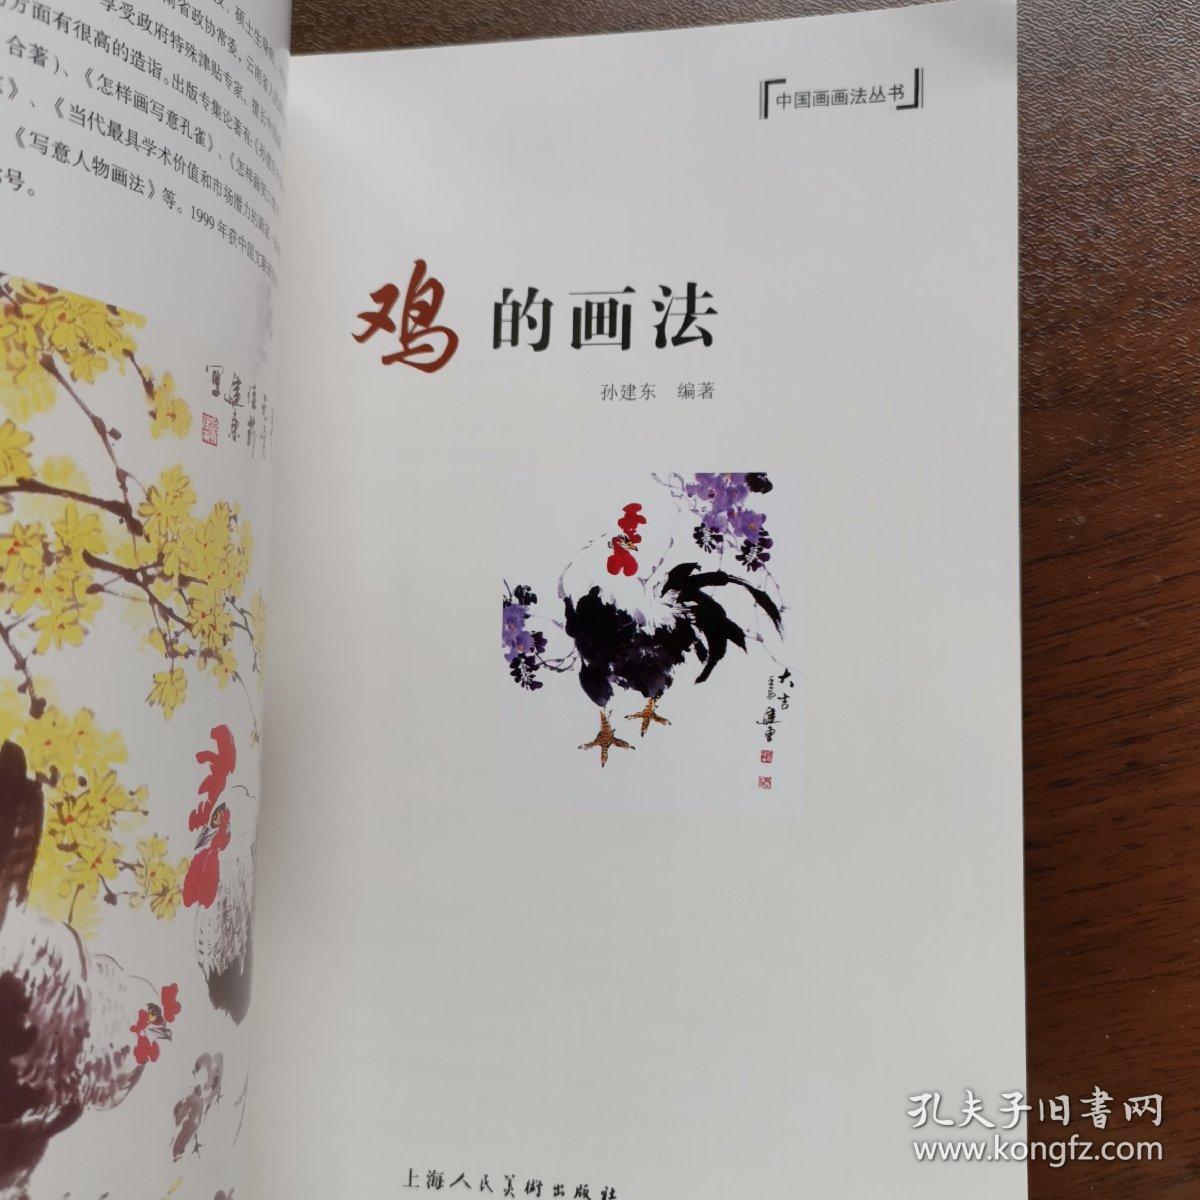 （正版好品）鸡的画法 2015年一版一印 孙建东 编著 上海人民美术出版社出版 稀缺 仅印3300册